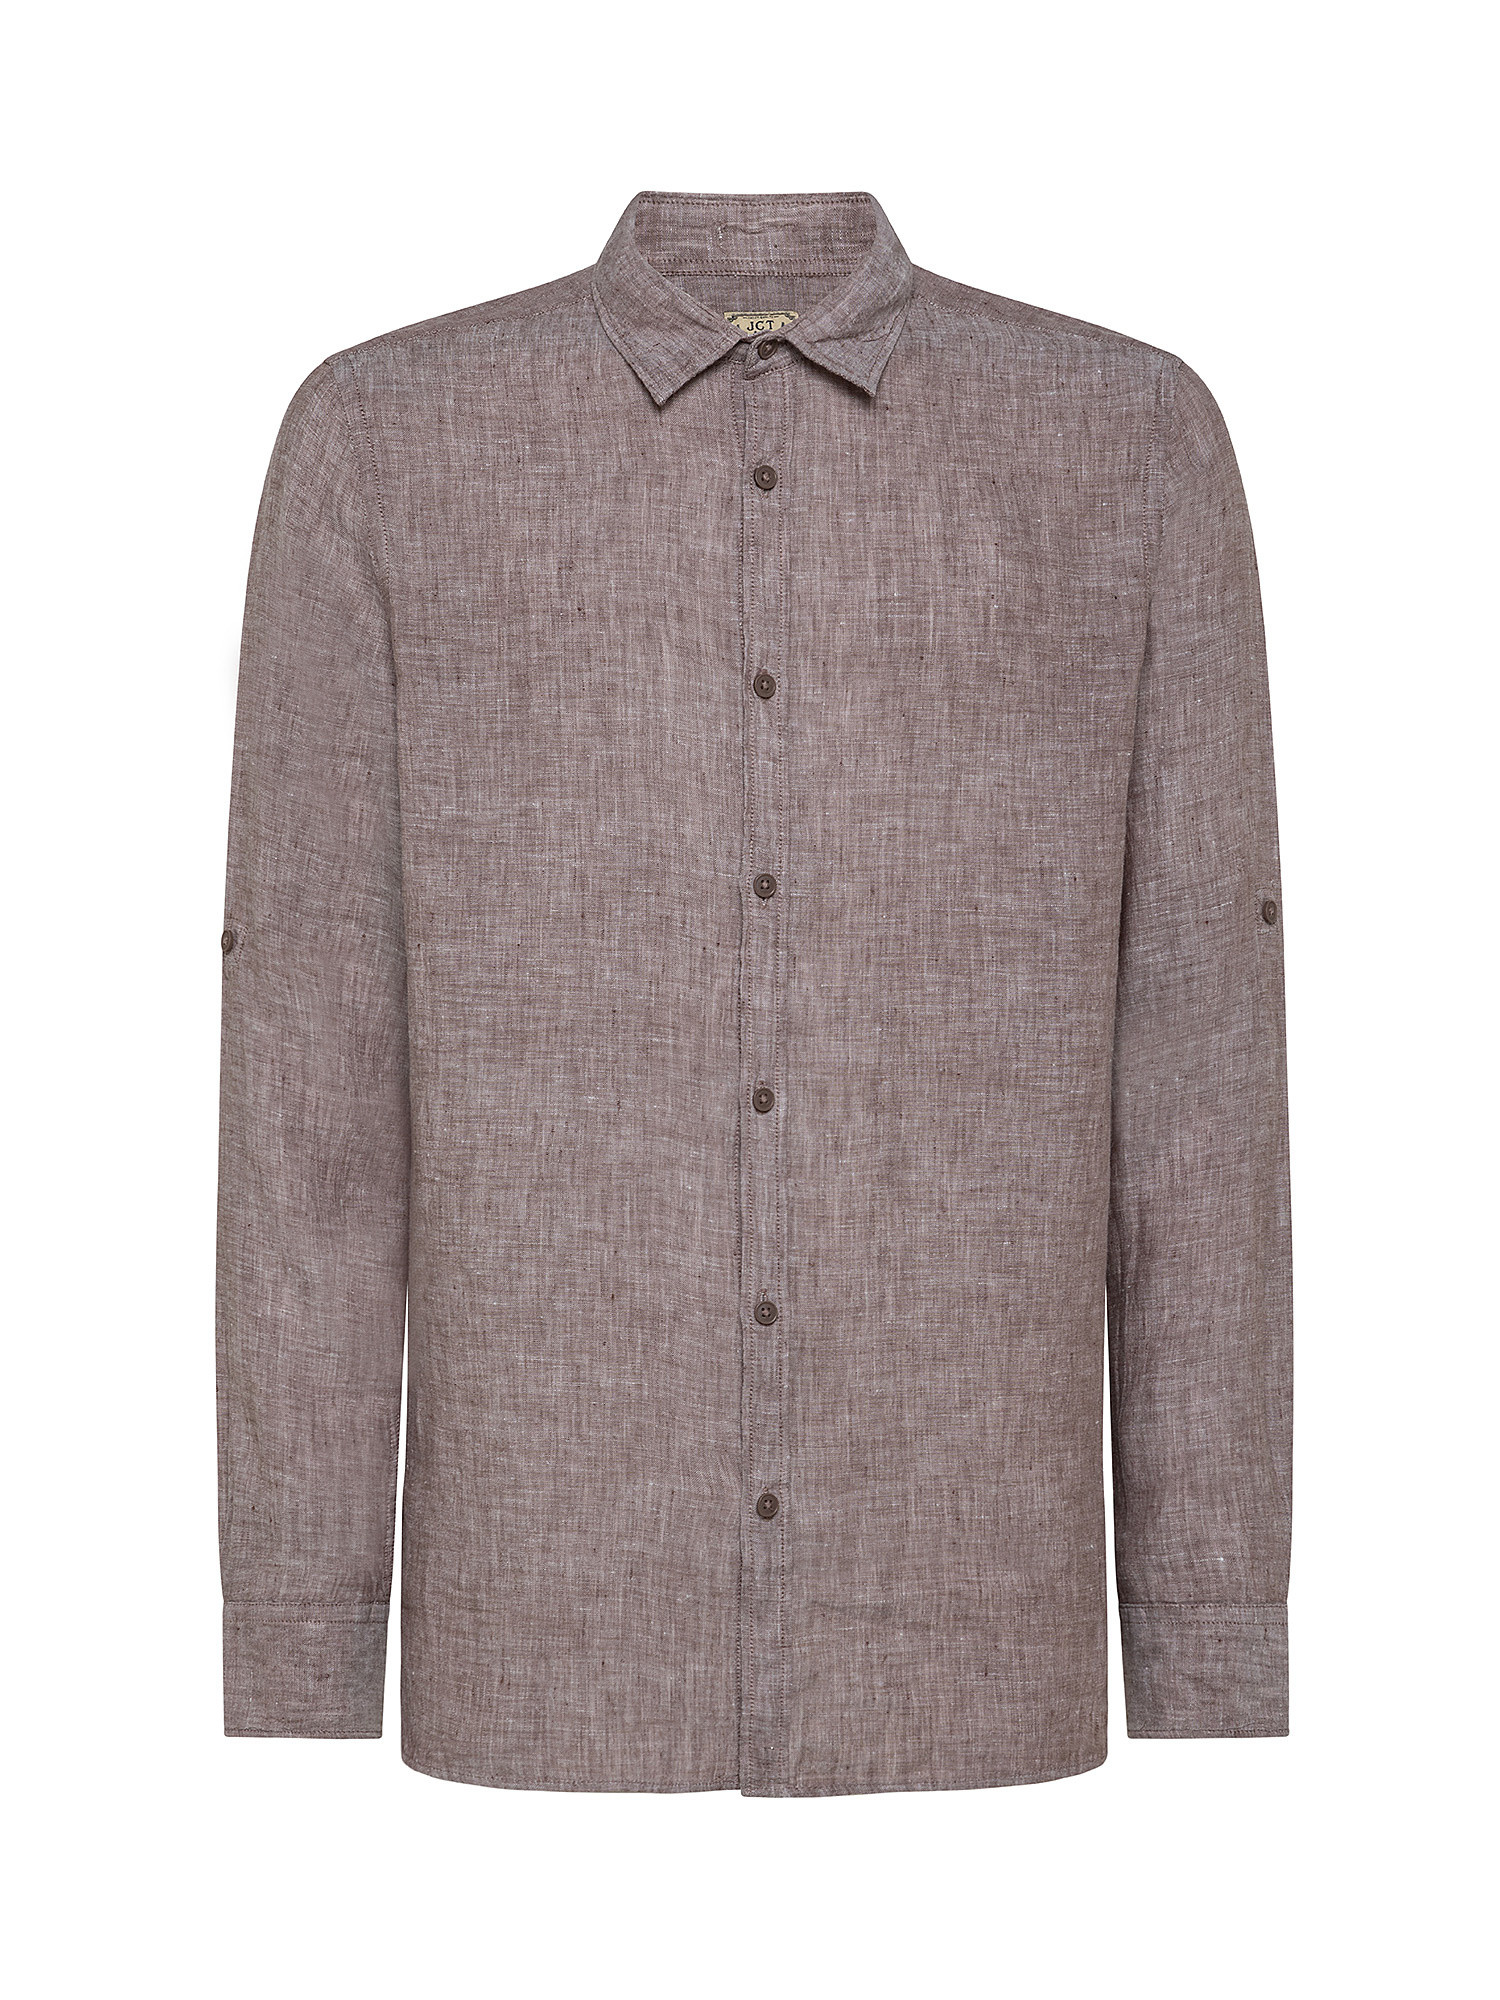 Camicia puro lino collo francese, Marrone chiaro, large image number 0